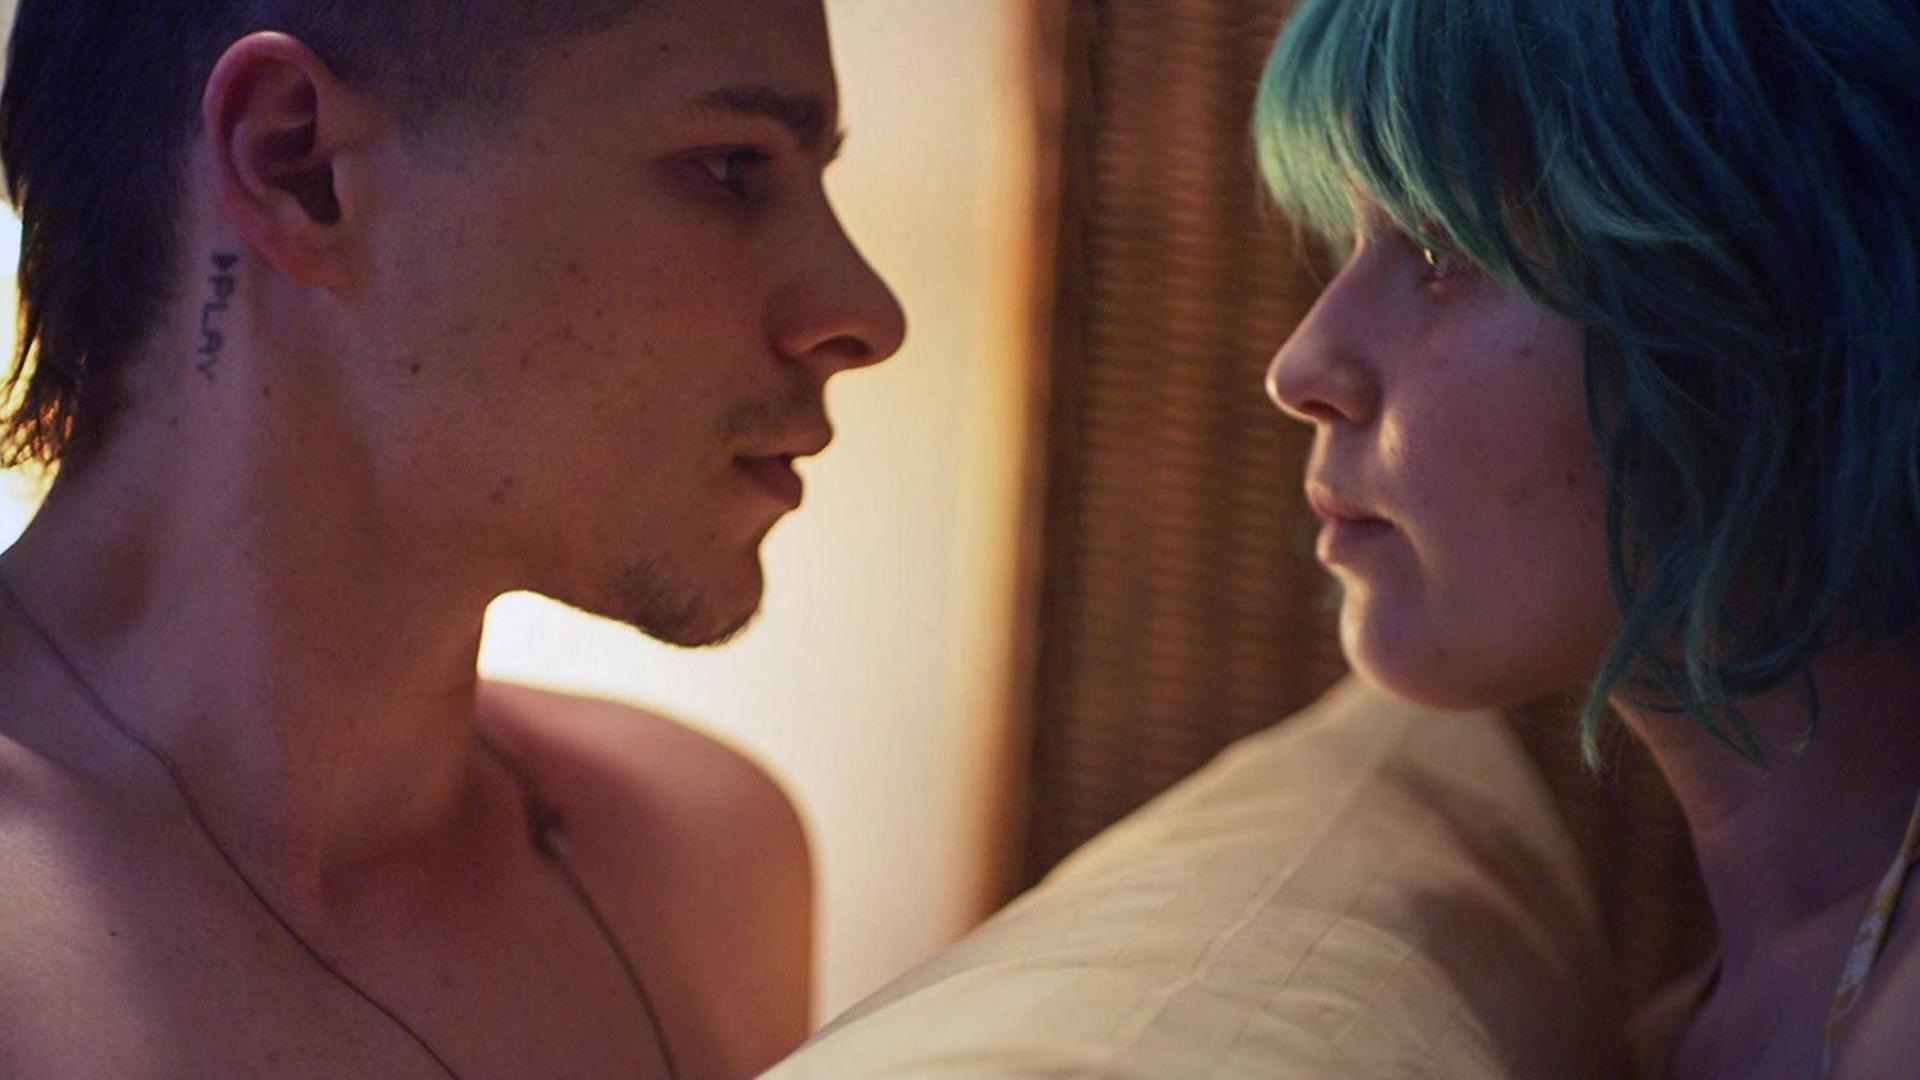 Die Schauspieler Toby Wallace und Eliza Scanlen im Film "Milla Meets Moses" von Regisseurin Shannon Murphy. Zwei junge Menschen schauen sich in die Augen.